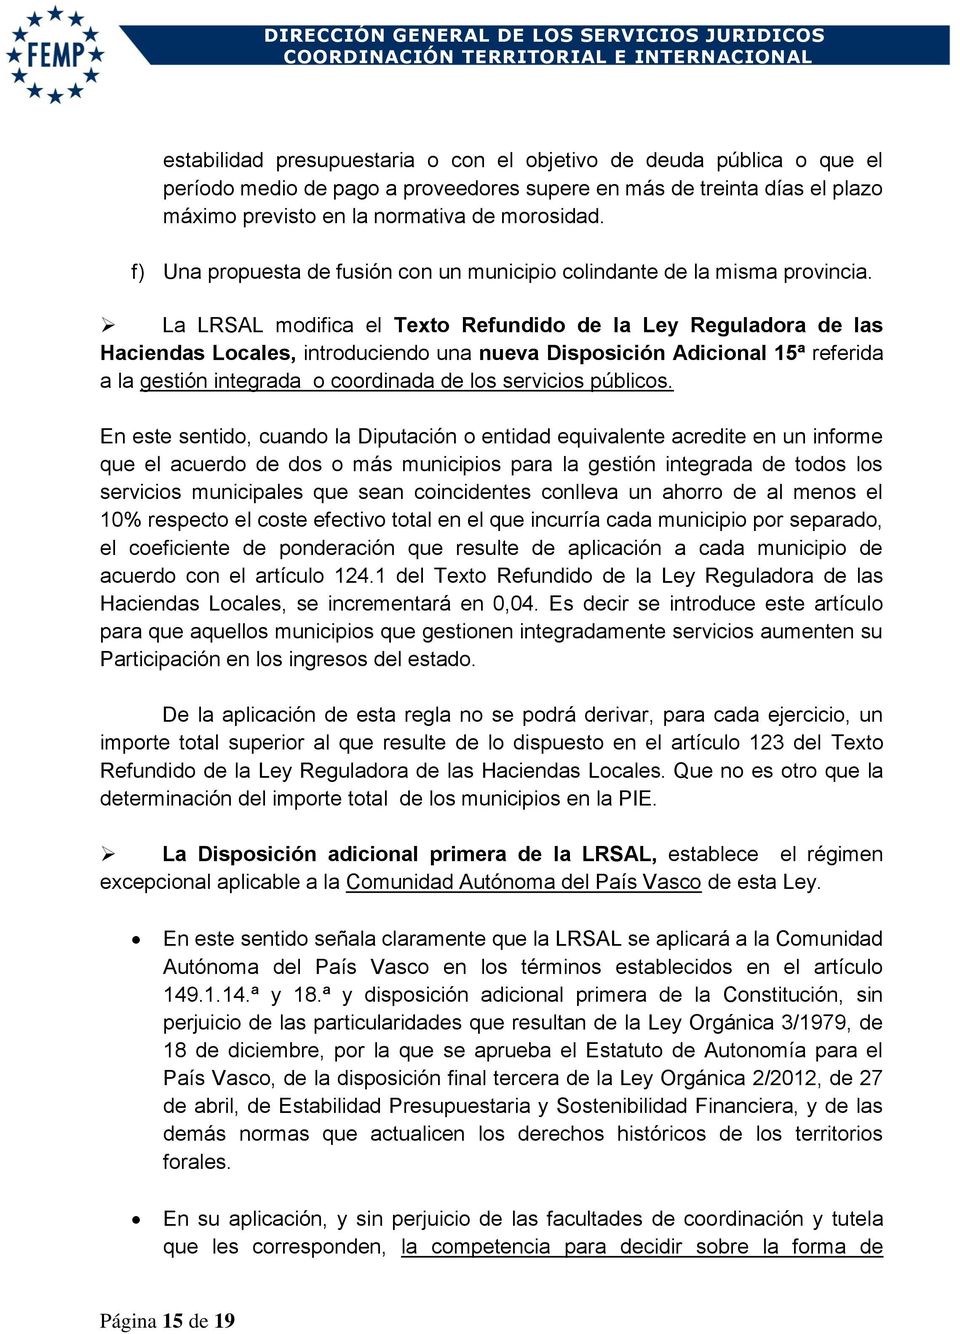 La LRSAL modifica el Texto Refundido de la Ley Reguladora de las Haciendas Locales, introduciendo una nueva Disposición Adicional 15ª referida a la gestión integrada o coordinada de los servicios